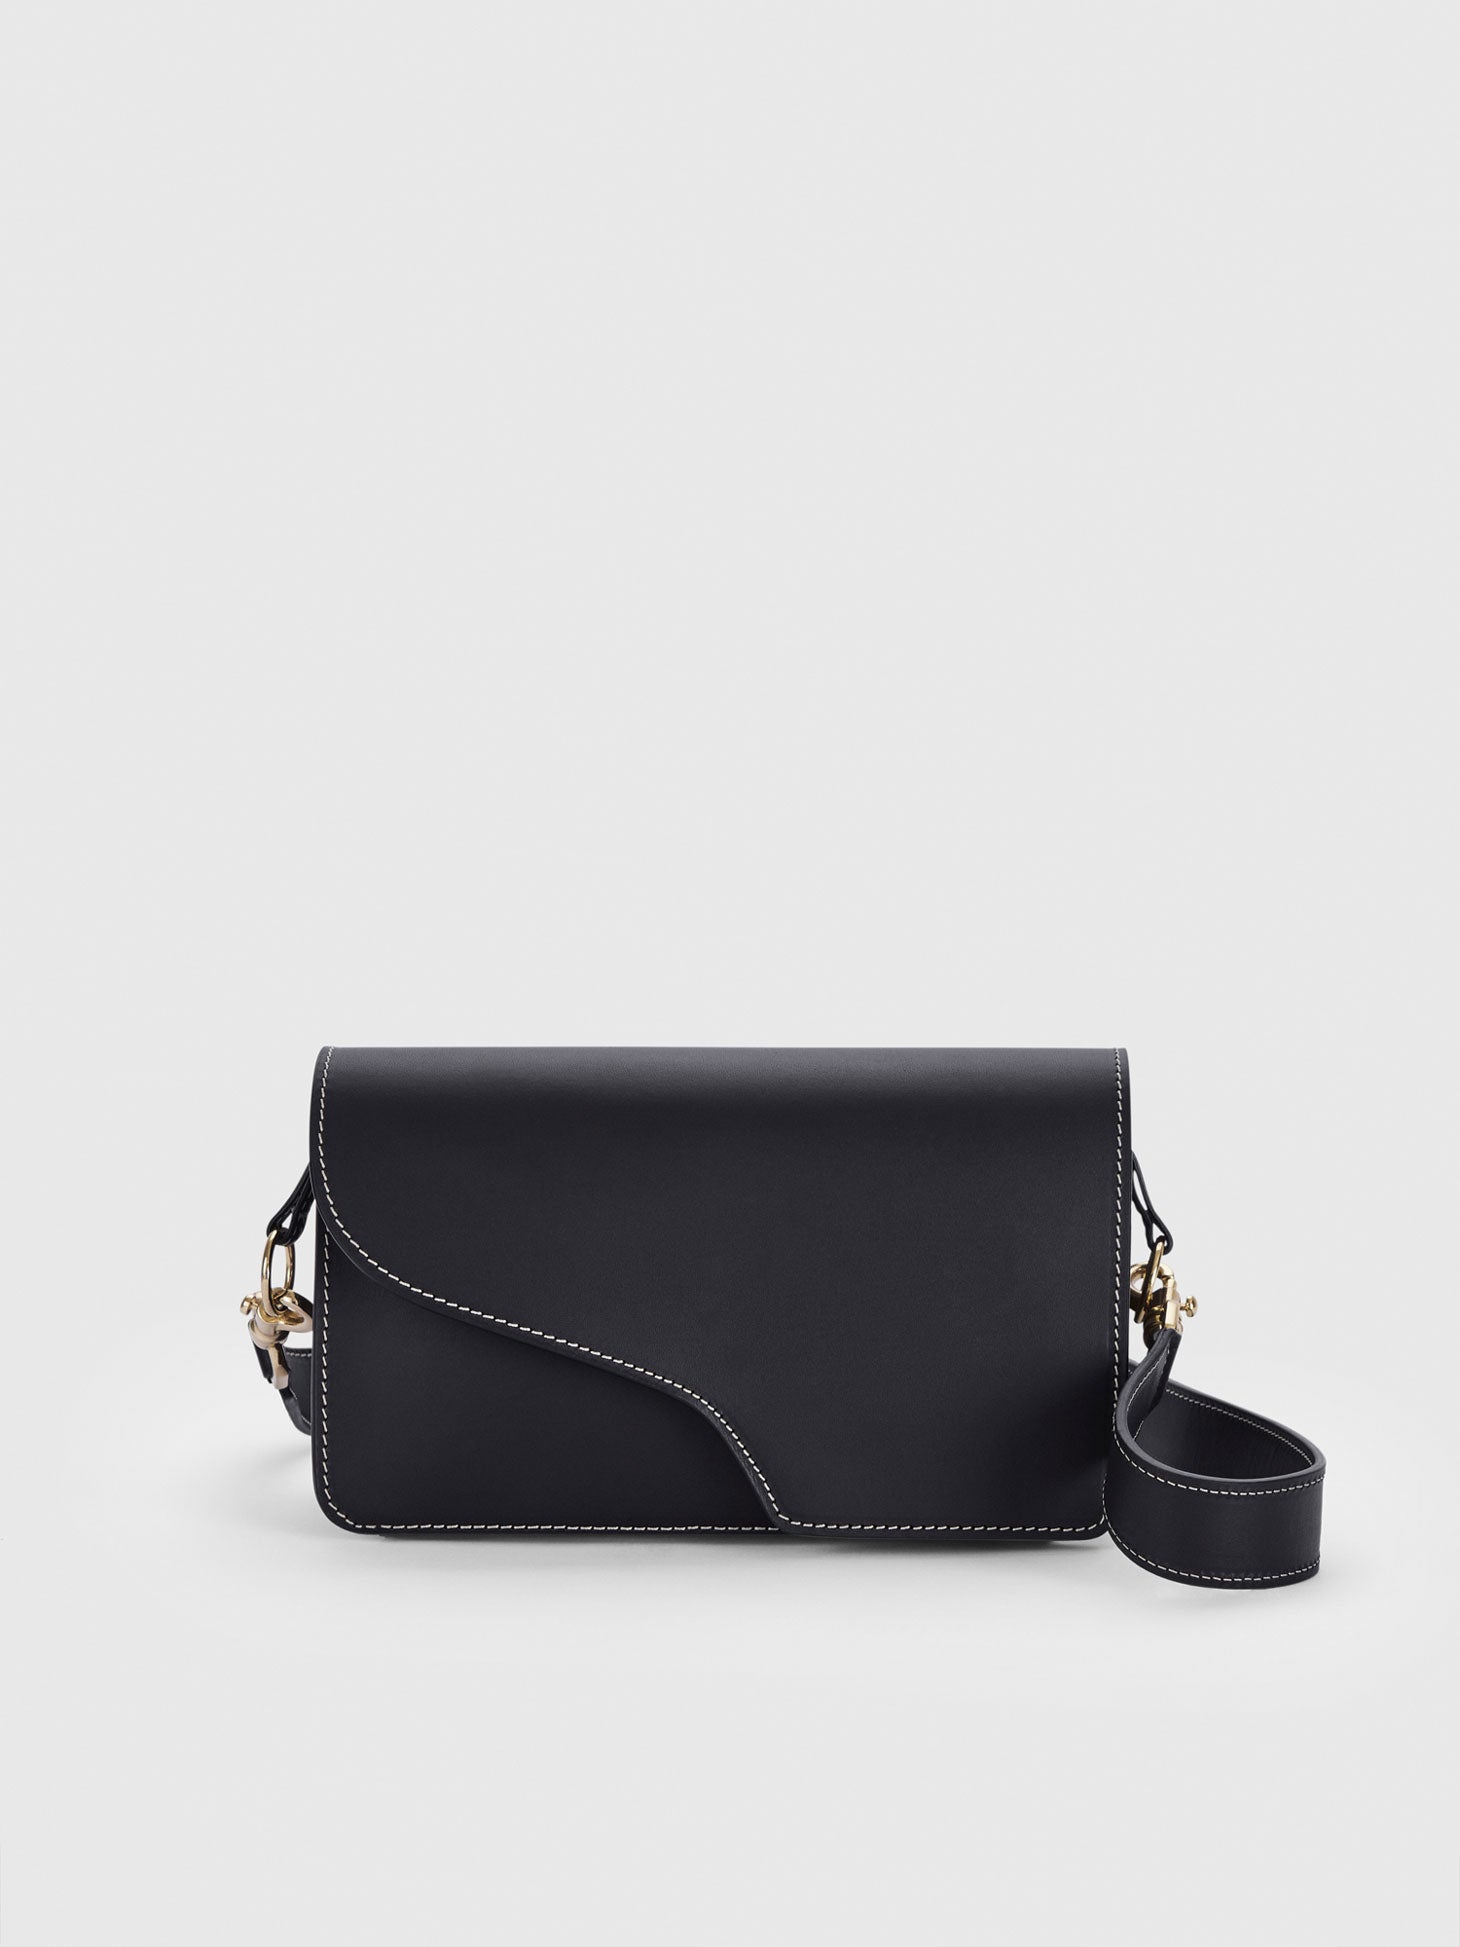 Assisi Black/Contrast Stitch Leather Shoulder Bag